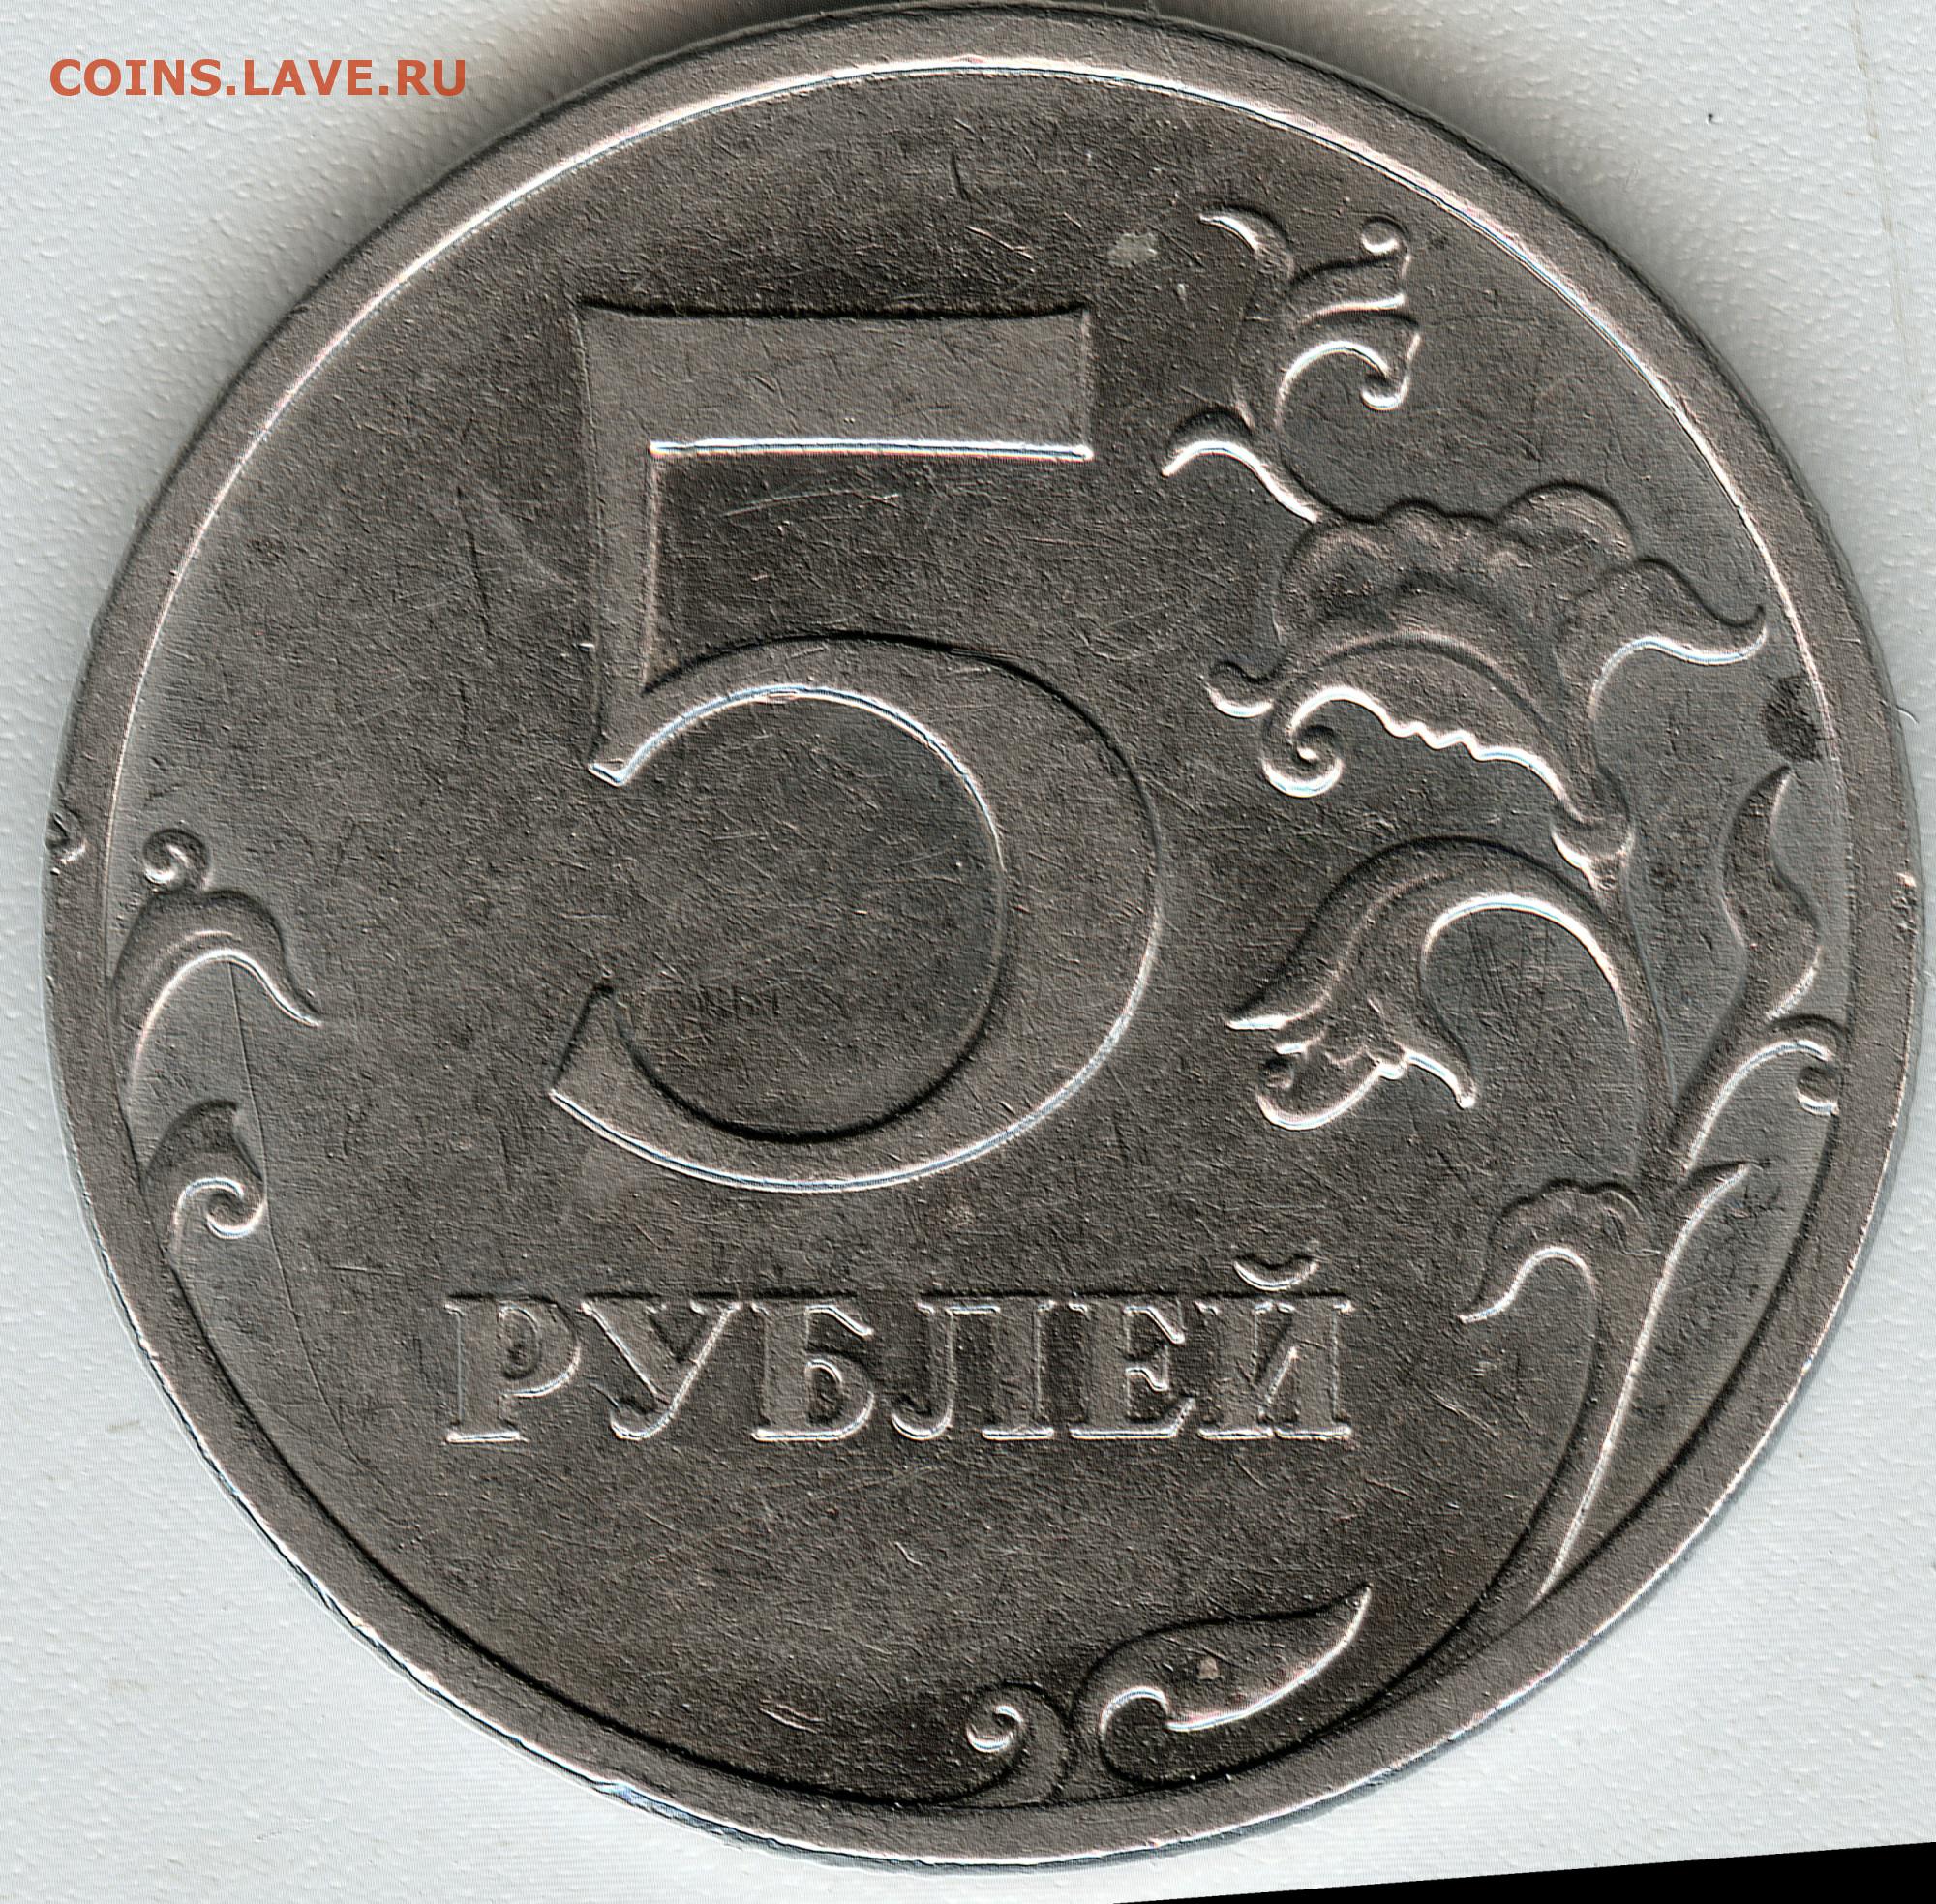 Момента 5 рублей. 5 Рублей 1997 года СПМД И ММД. ММД на 5 руб 1997. Аверс 5 рублей. 5 Рублей 2008 года СПМД.